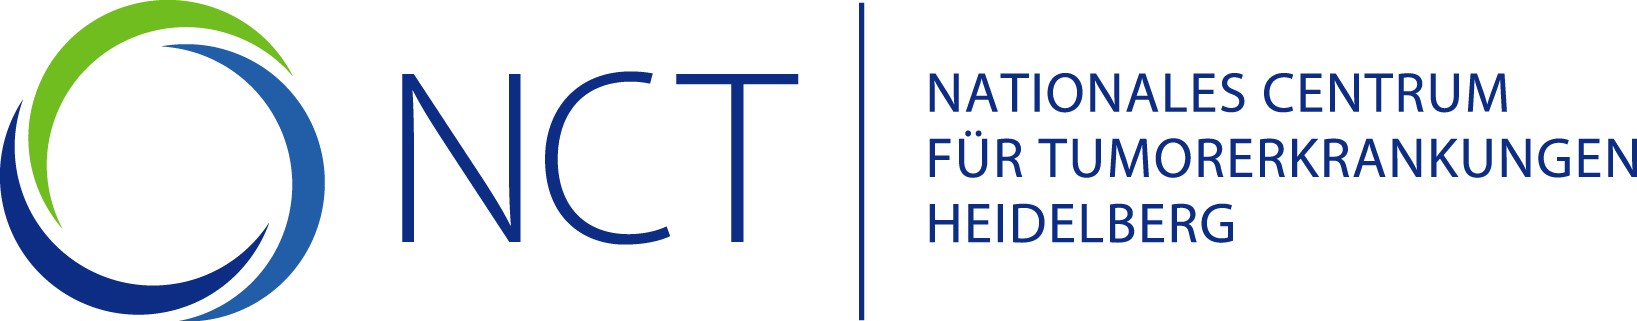 Nationales Centrum für Tumorerkrankungen (NCT) Logo